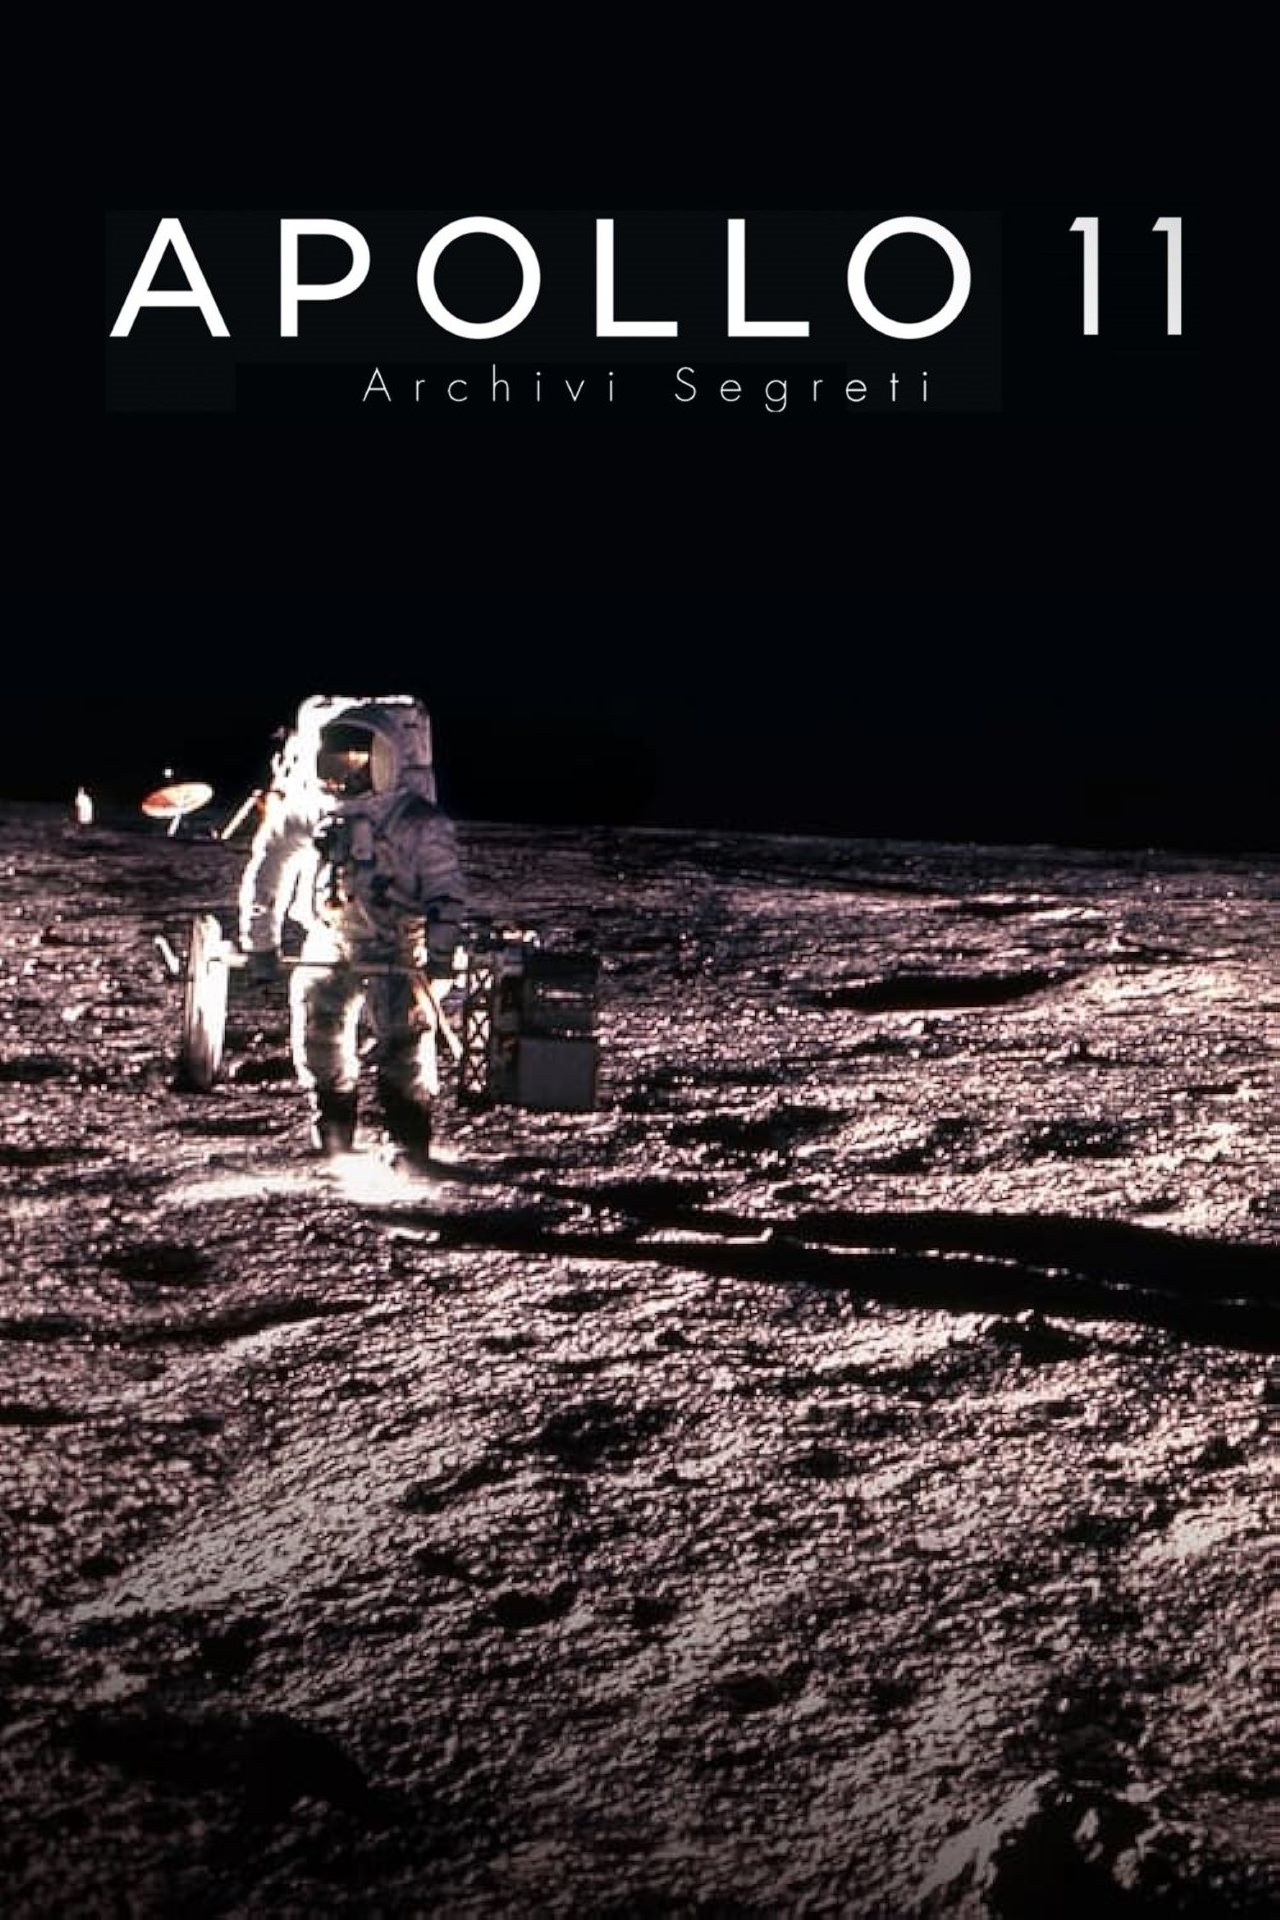 Apollo 11 - Archivi segreti in streaming